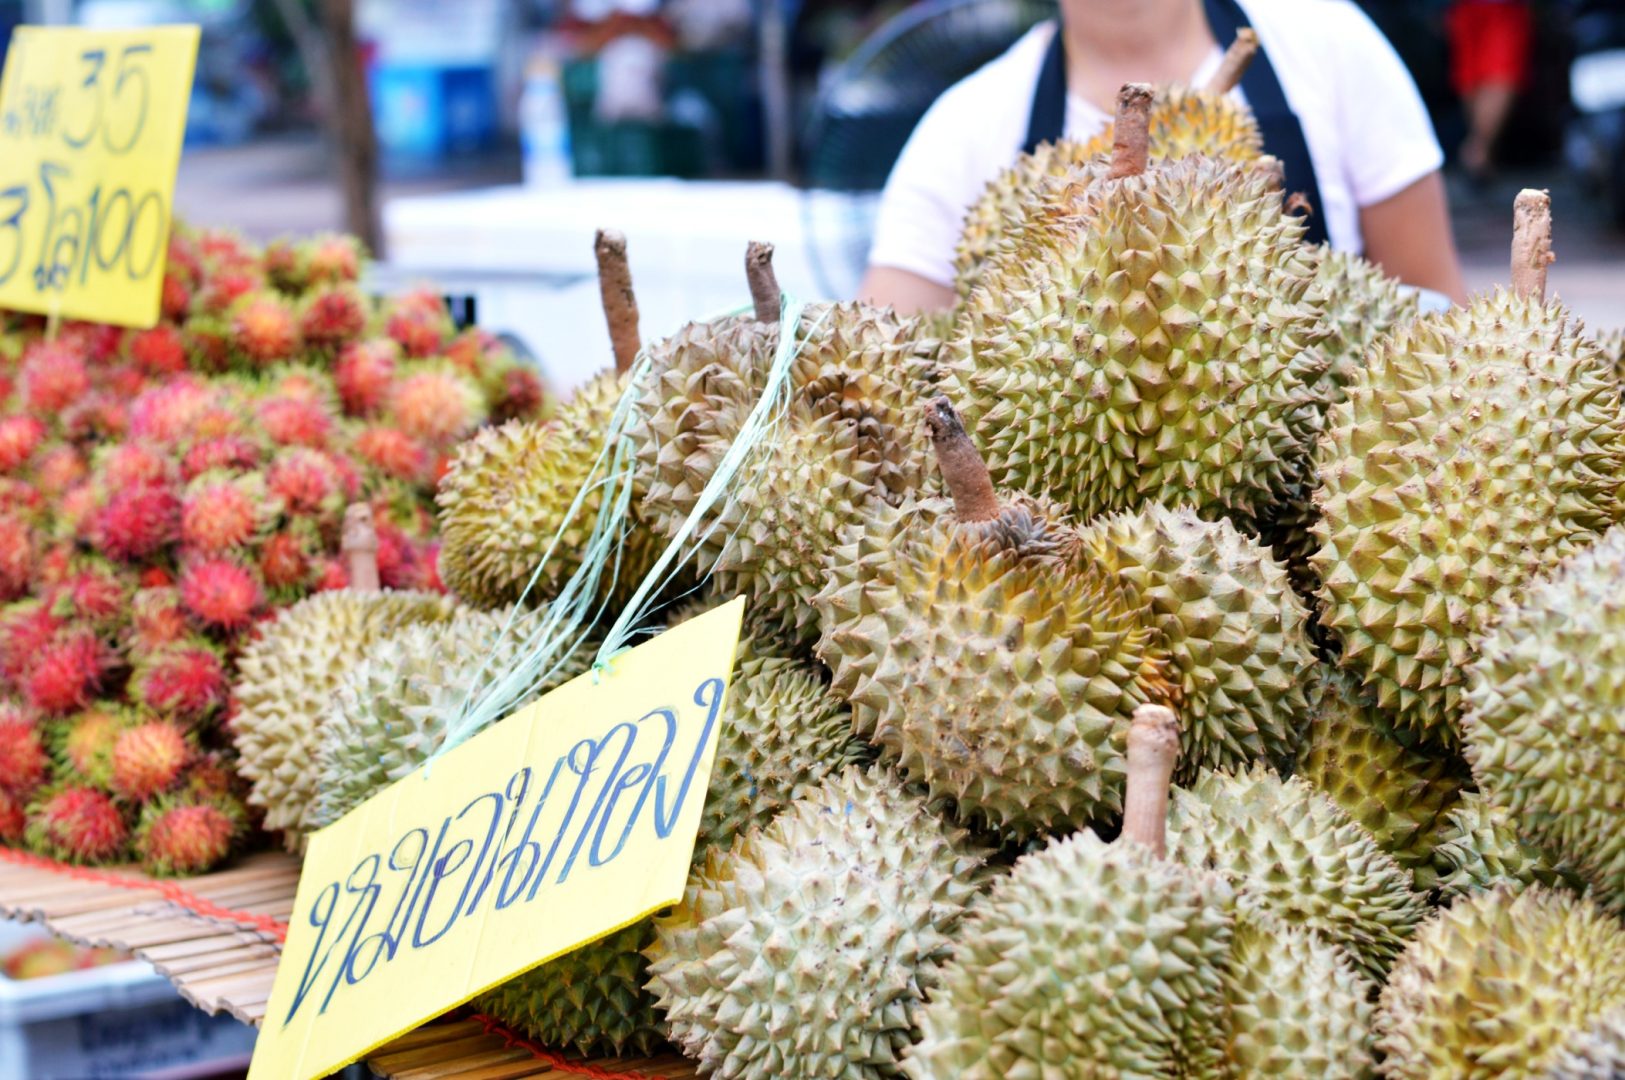 5 exotische Früchte aus Thailand - Durian| www.dearlicious.com